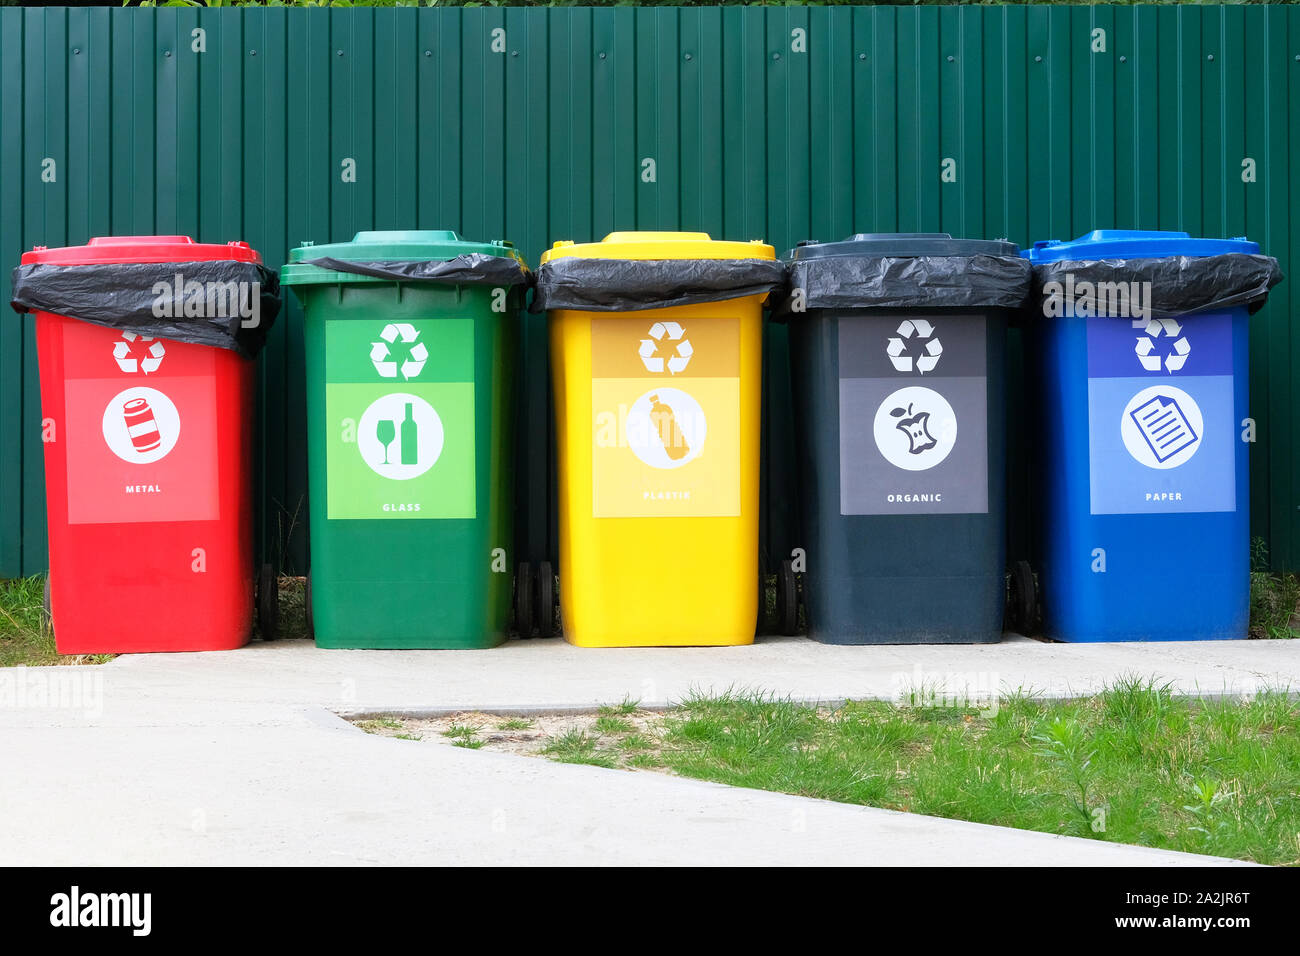 Separate Garbage Collection. Recycling von Abfällen Konzept. Container für Metall, Glas, Papier, Organics, Kunststoff für die weitere Verarbeitung von Müll. Stockfoto